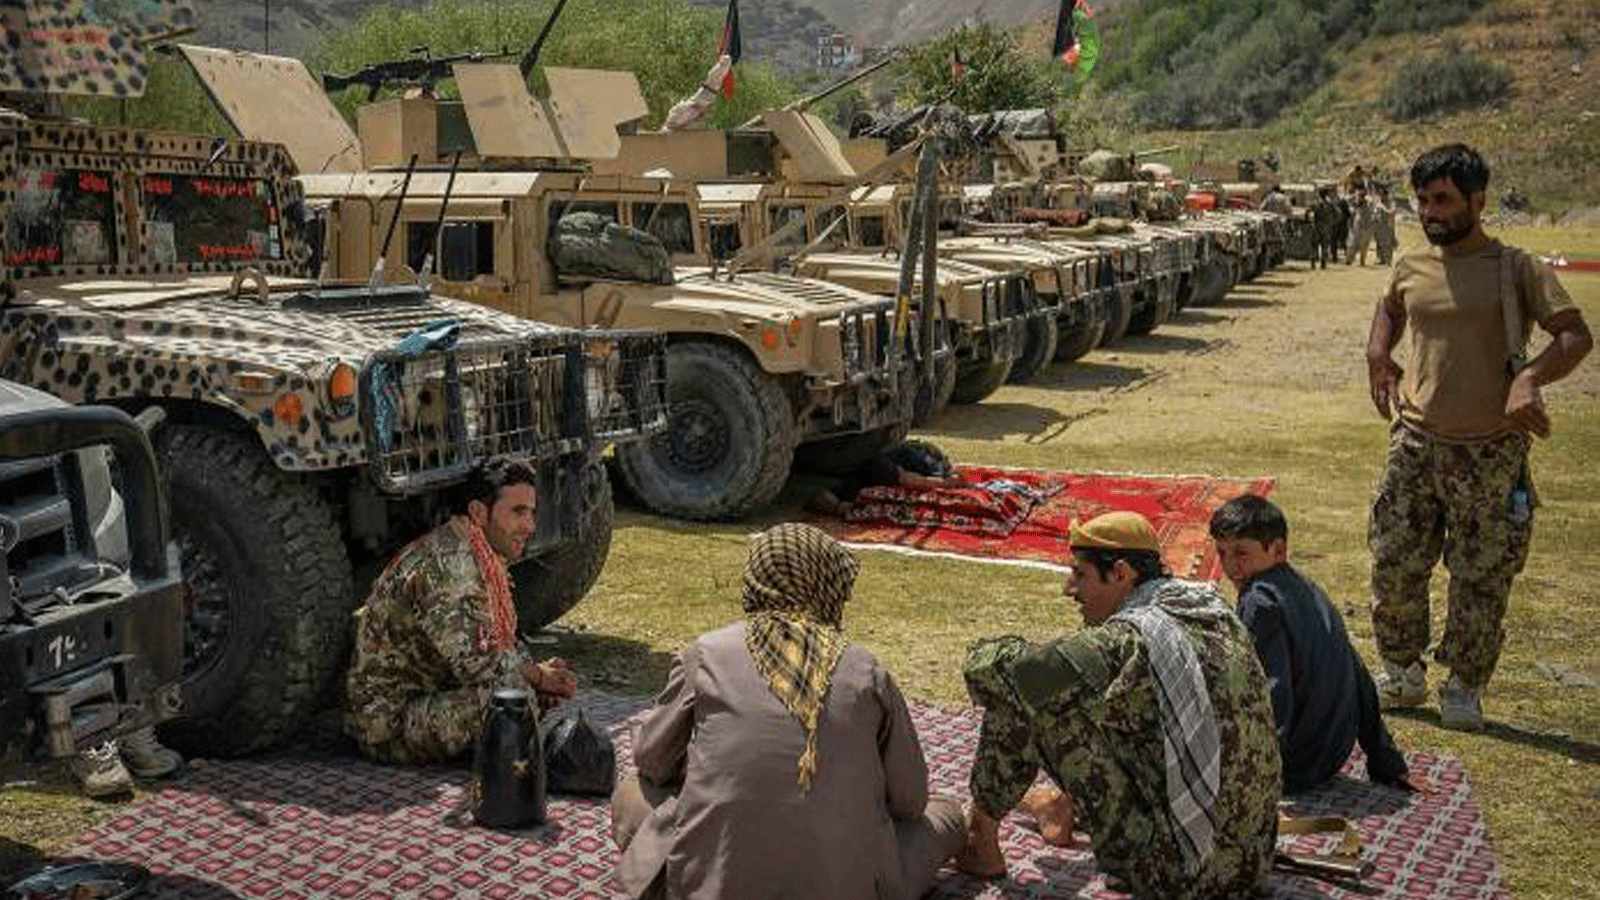  مسلحون أفغان يدعمون قوات الأمن الأفغانية ضد طالبان يقفون بأسلحتهم وعربات همفي في بازارك بإقليم بانشير في 19 آب/ أغسطس 2021